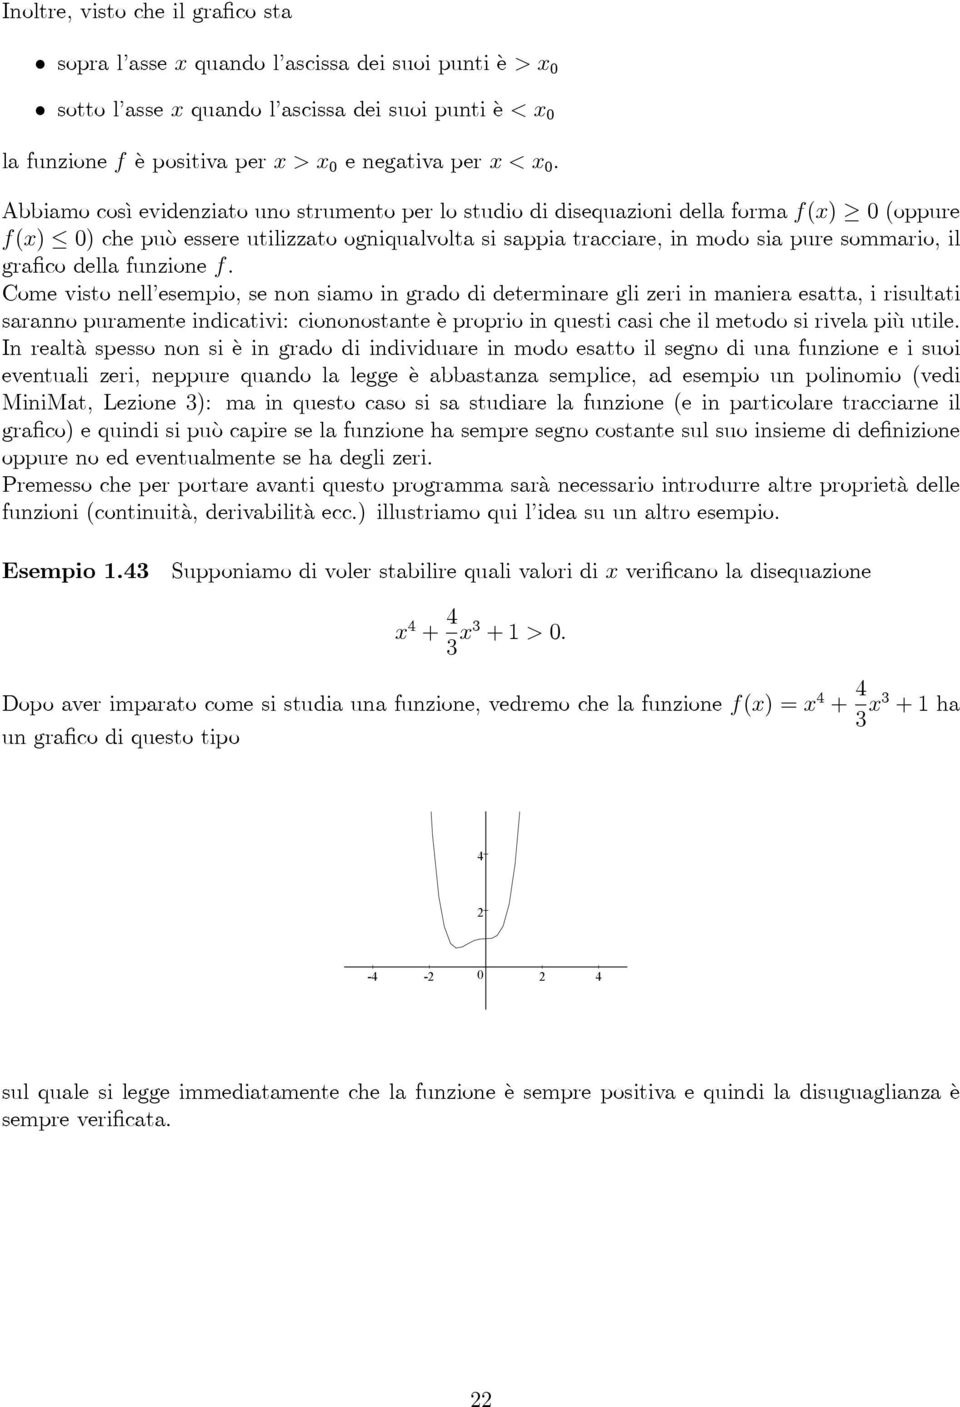 grafico della funzione f.